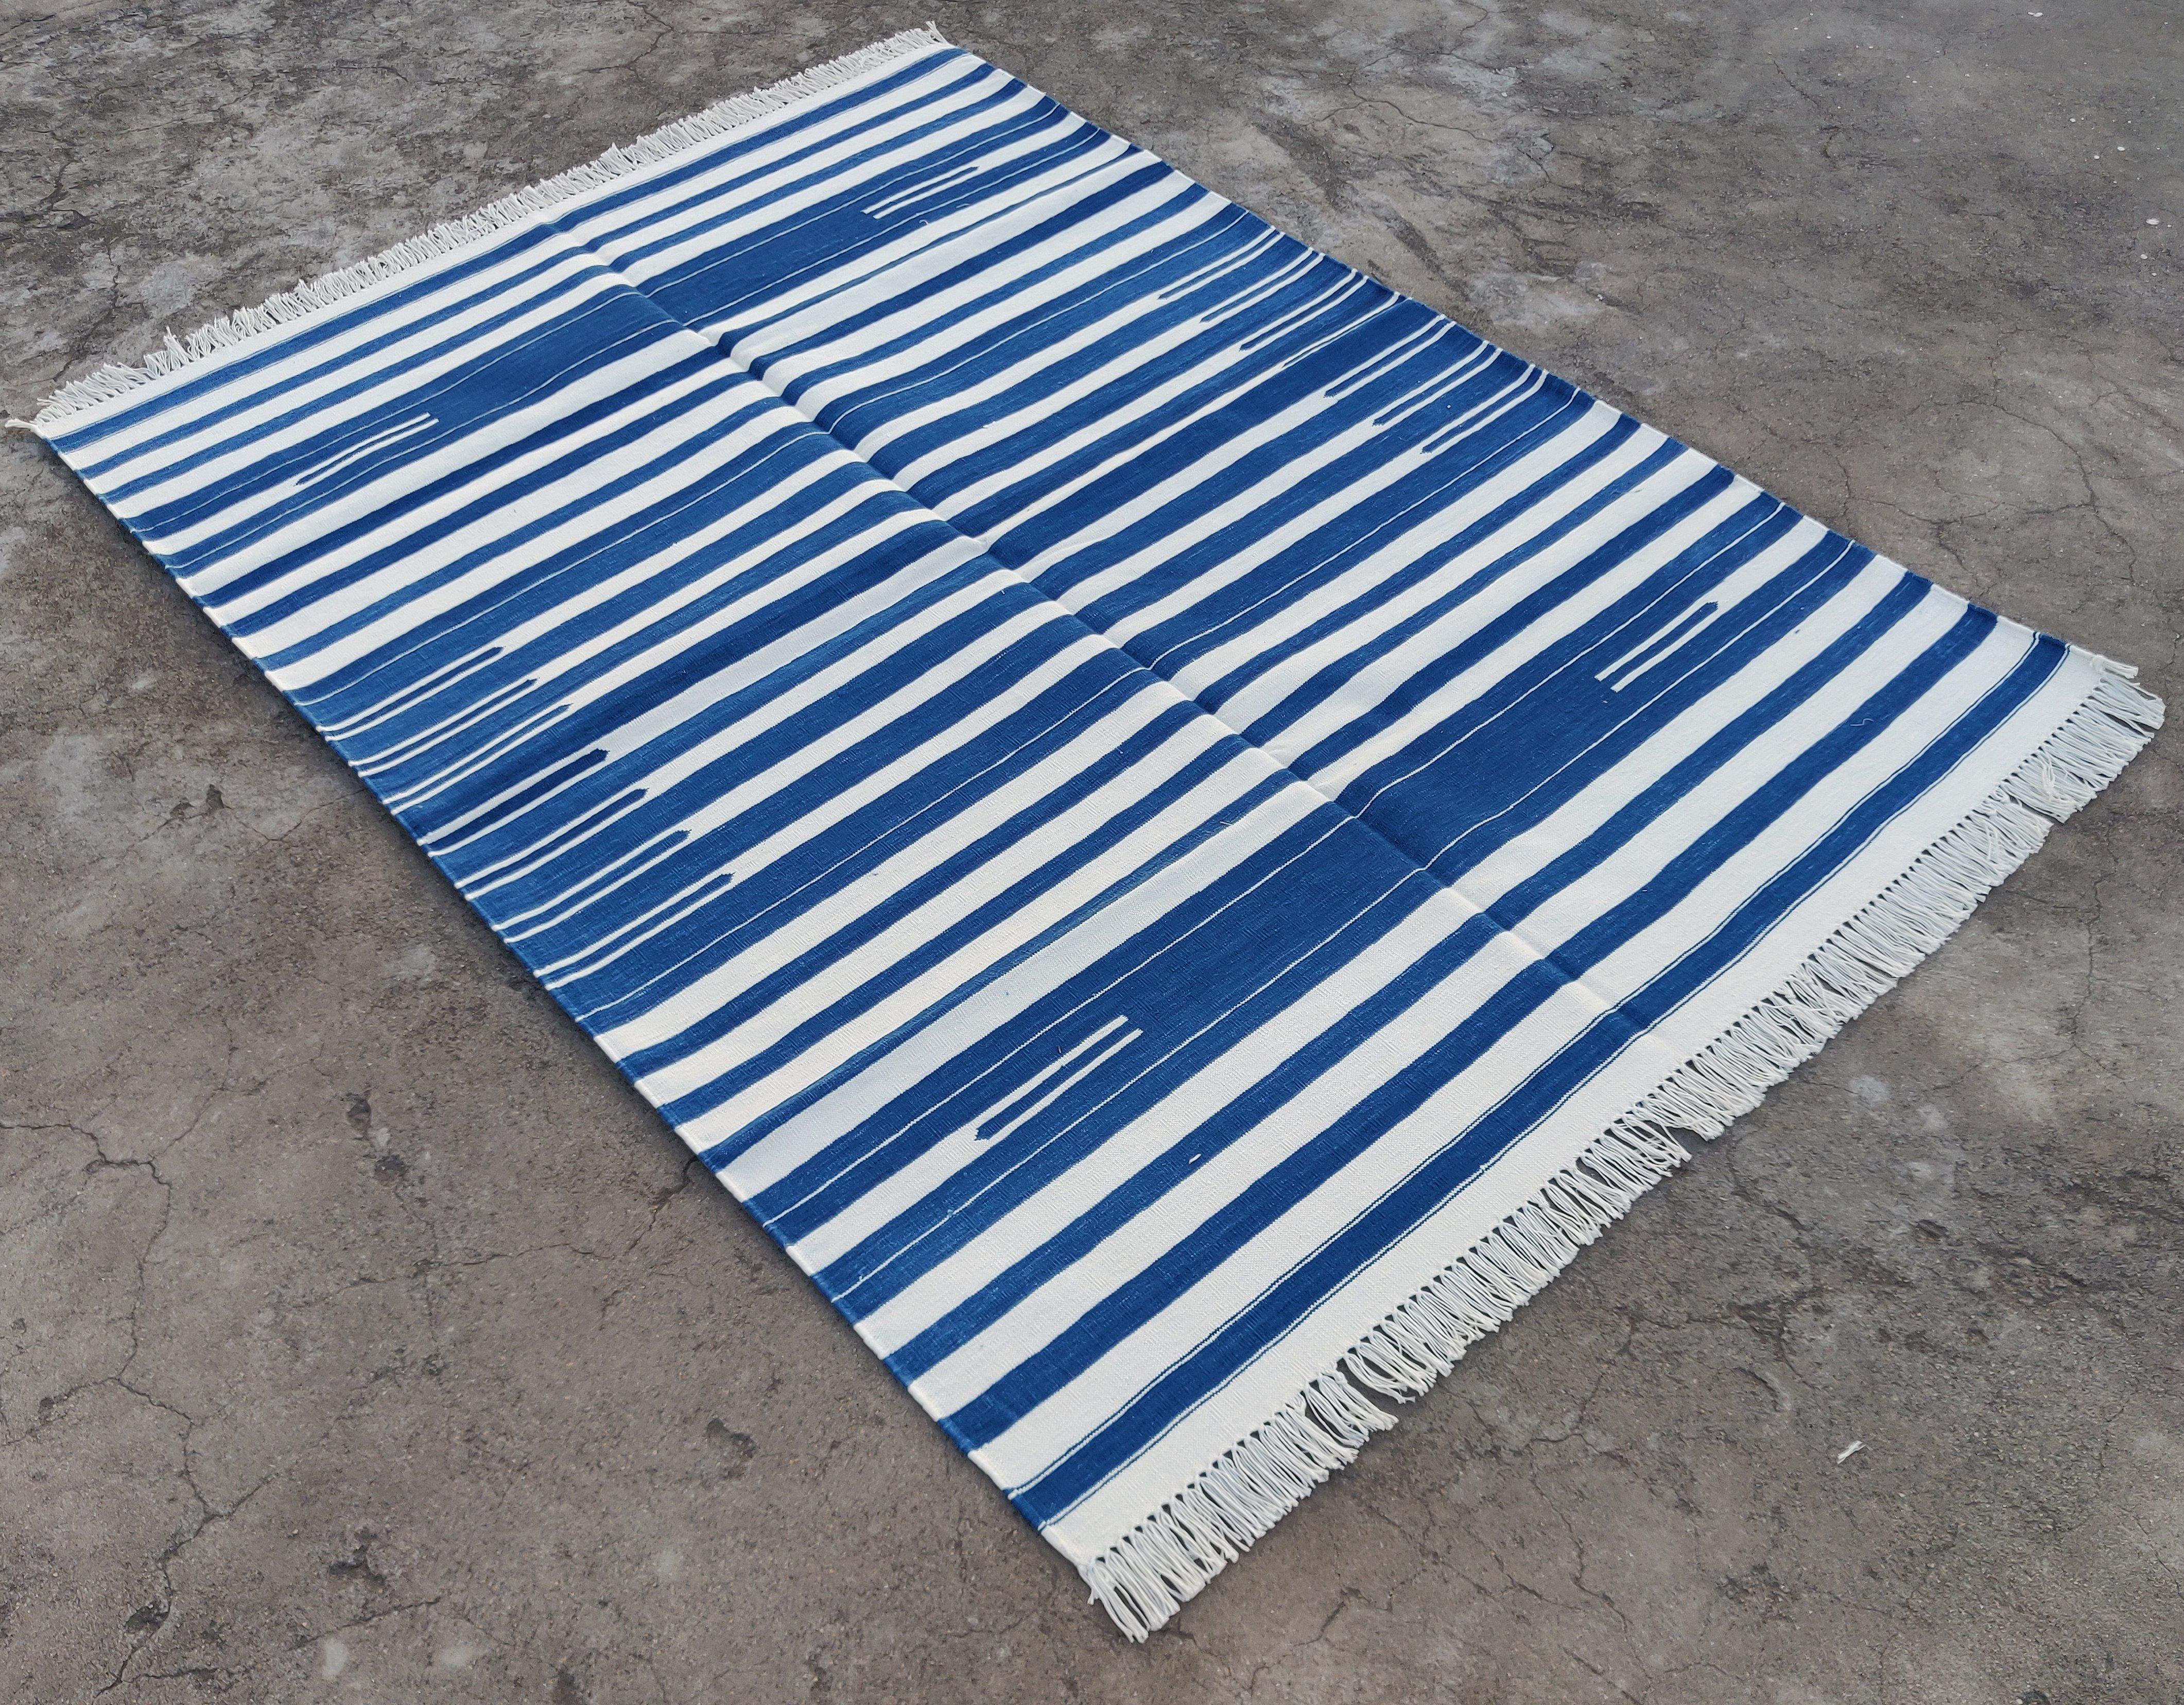 Baumwolle pflanzlich gefärbt Indigo blau und weiß gestreift indischen Dhurrie Teppich-4'x6' 

Diese speziellen flachgewebten Dhurries werden aus 15-fachem Garn aus 100% Baumwolle handgewebt. Aufgrund der speziellen Fertigungstechniken, die zur